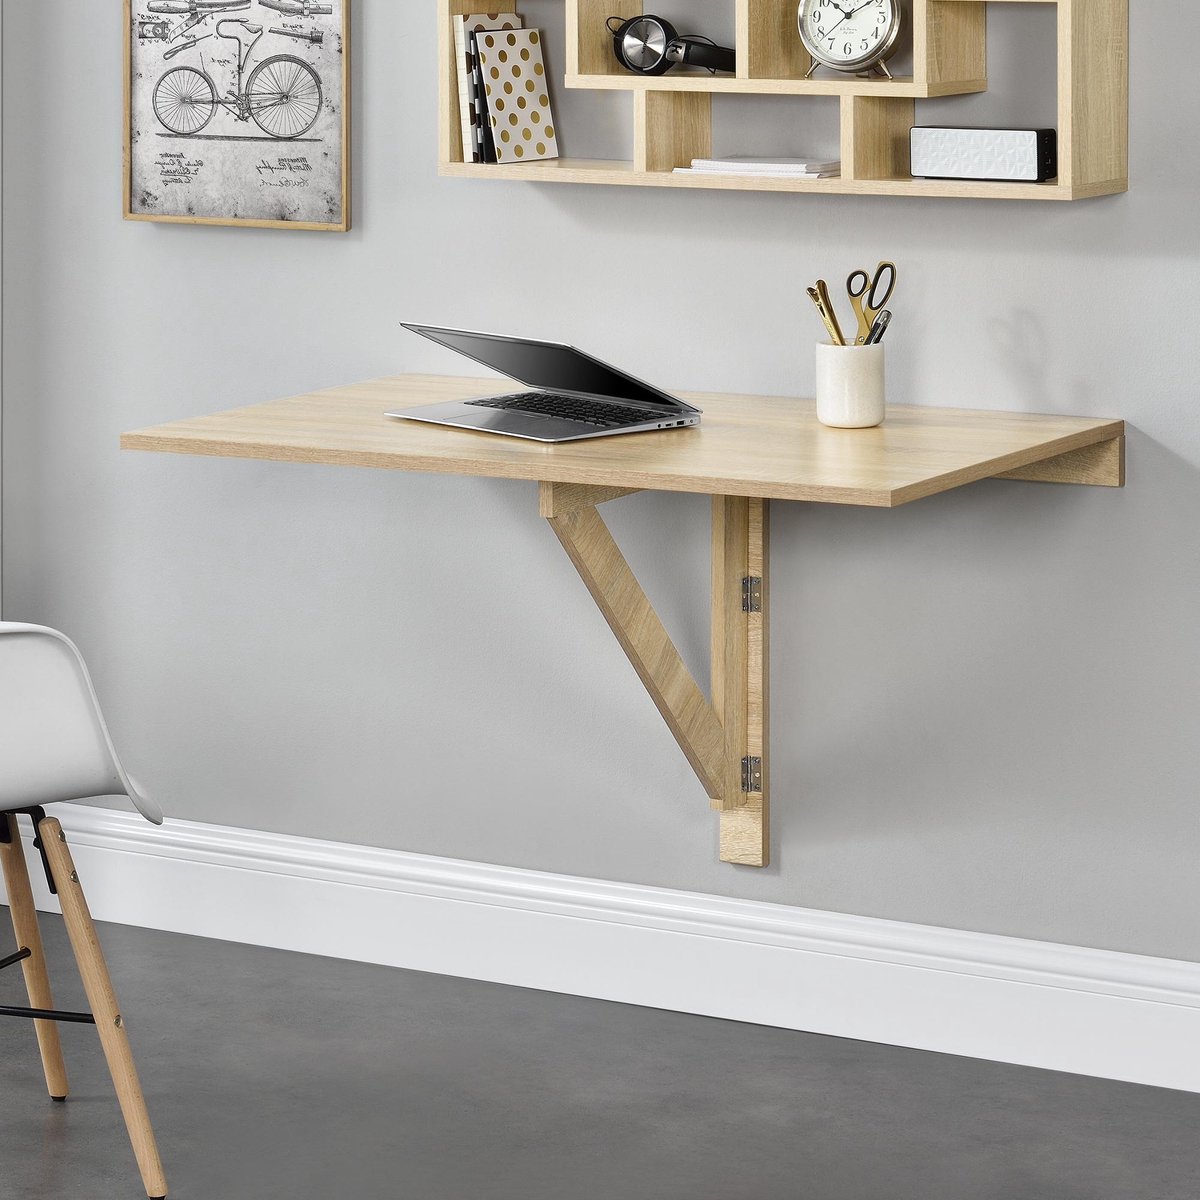 oogsten Onleesbaar Luxe Tafel bureau opvouwbaar voor wandmontage 100x60x58 hout | bol.com